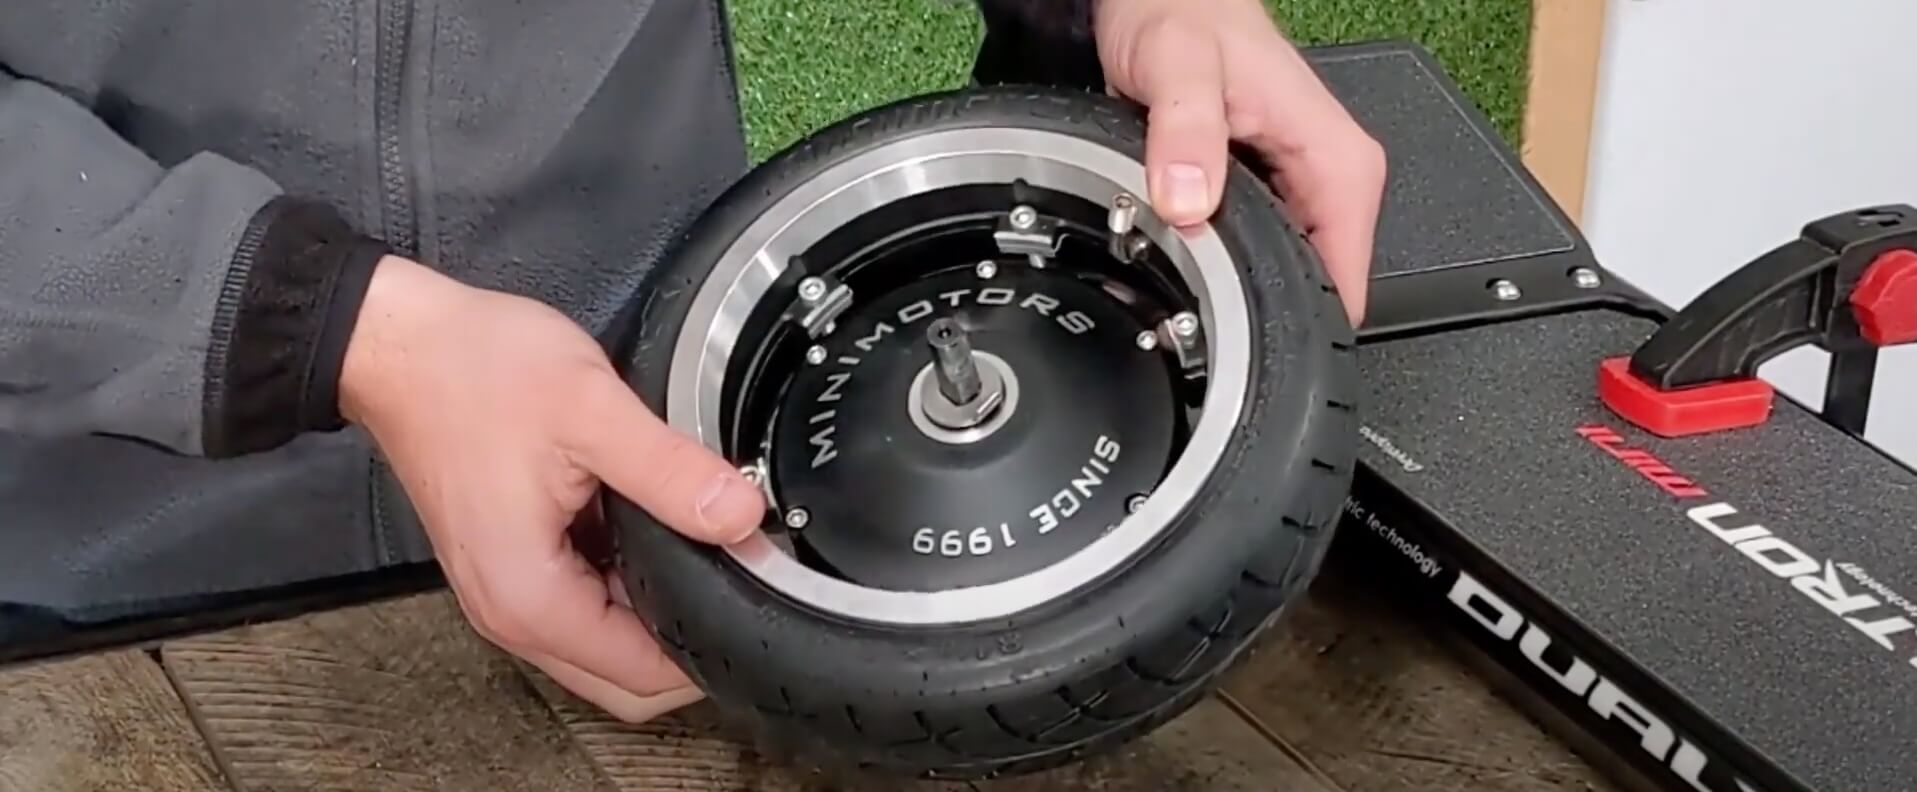 Dualtron Mini - Roue Arriere - Désolidariser le pneu du moteur